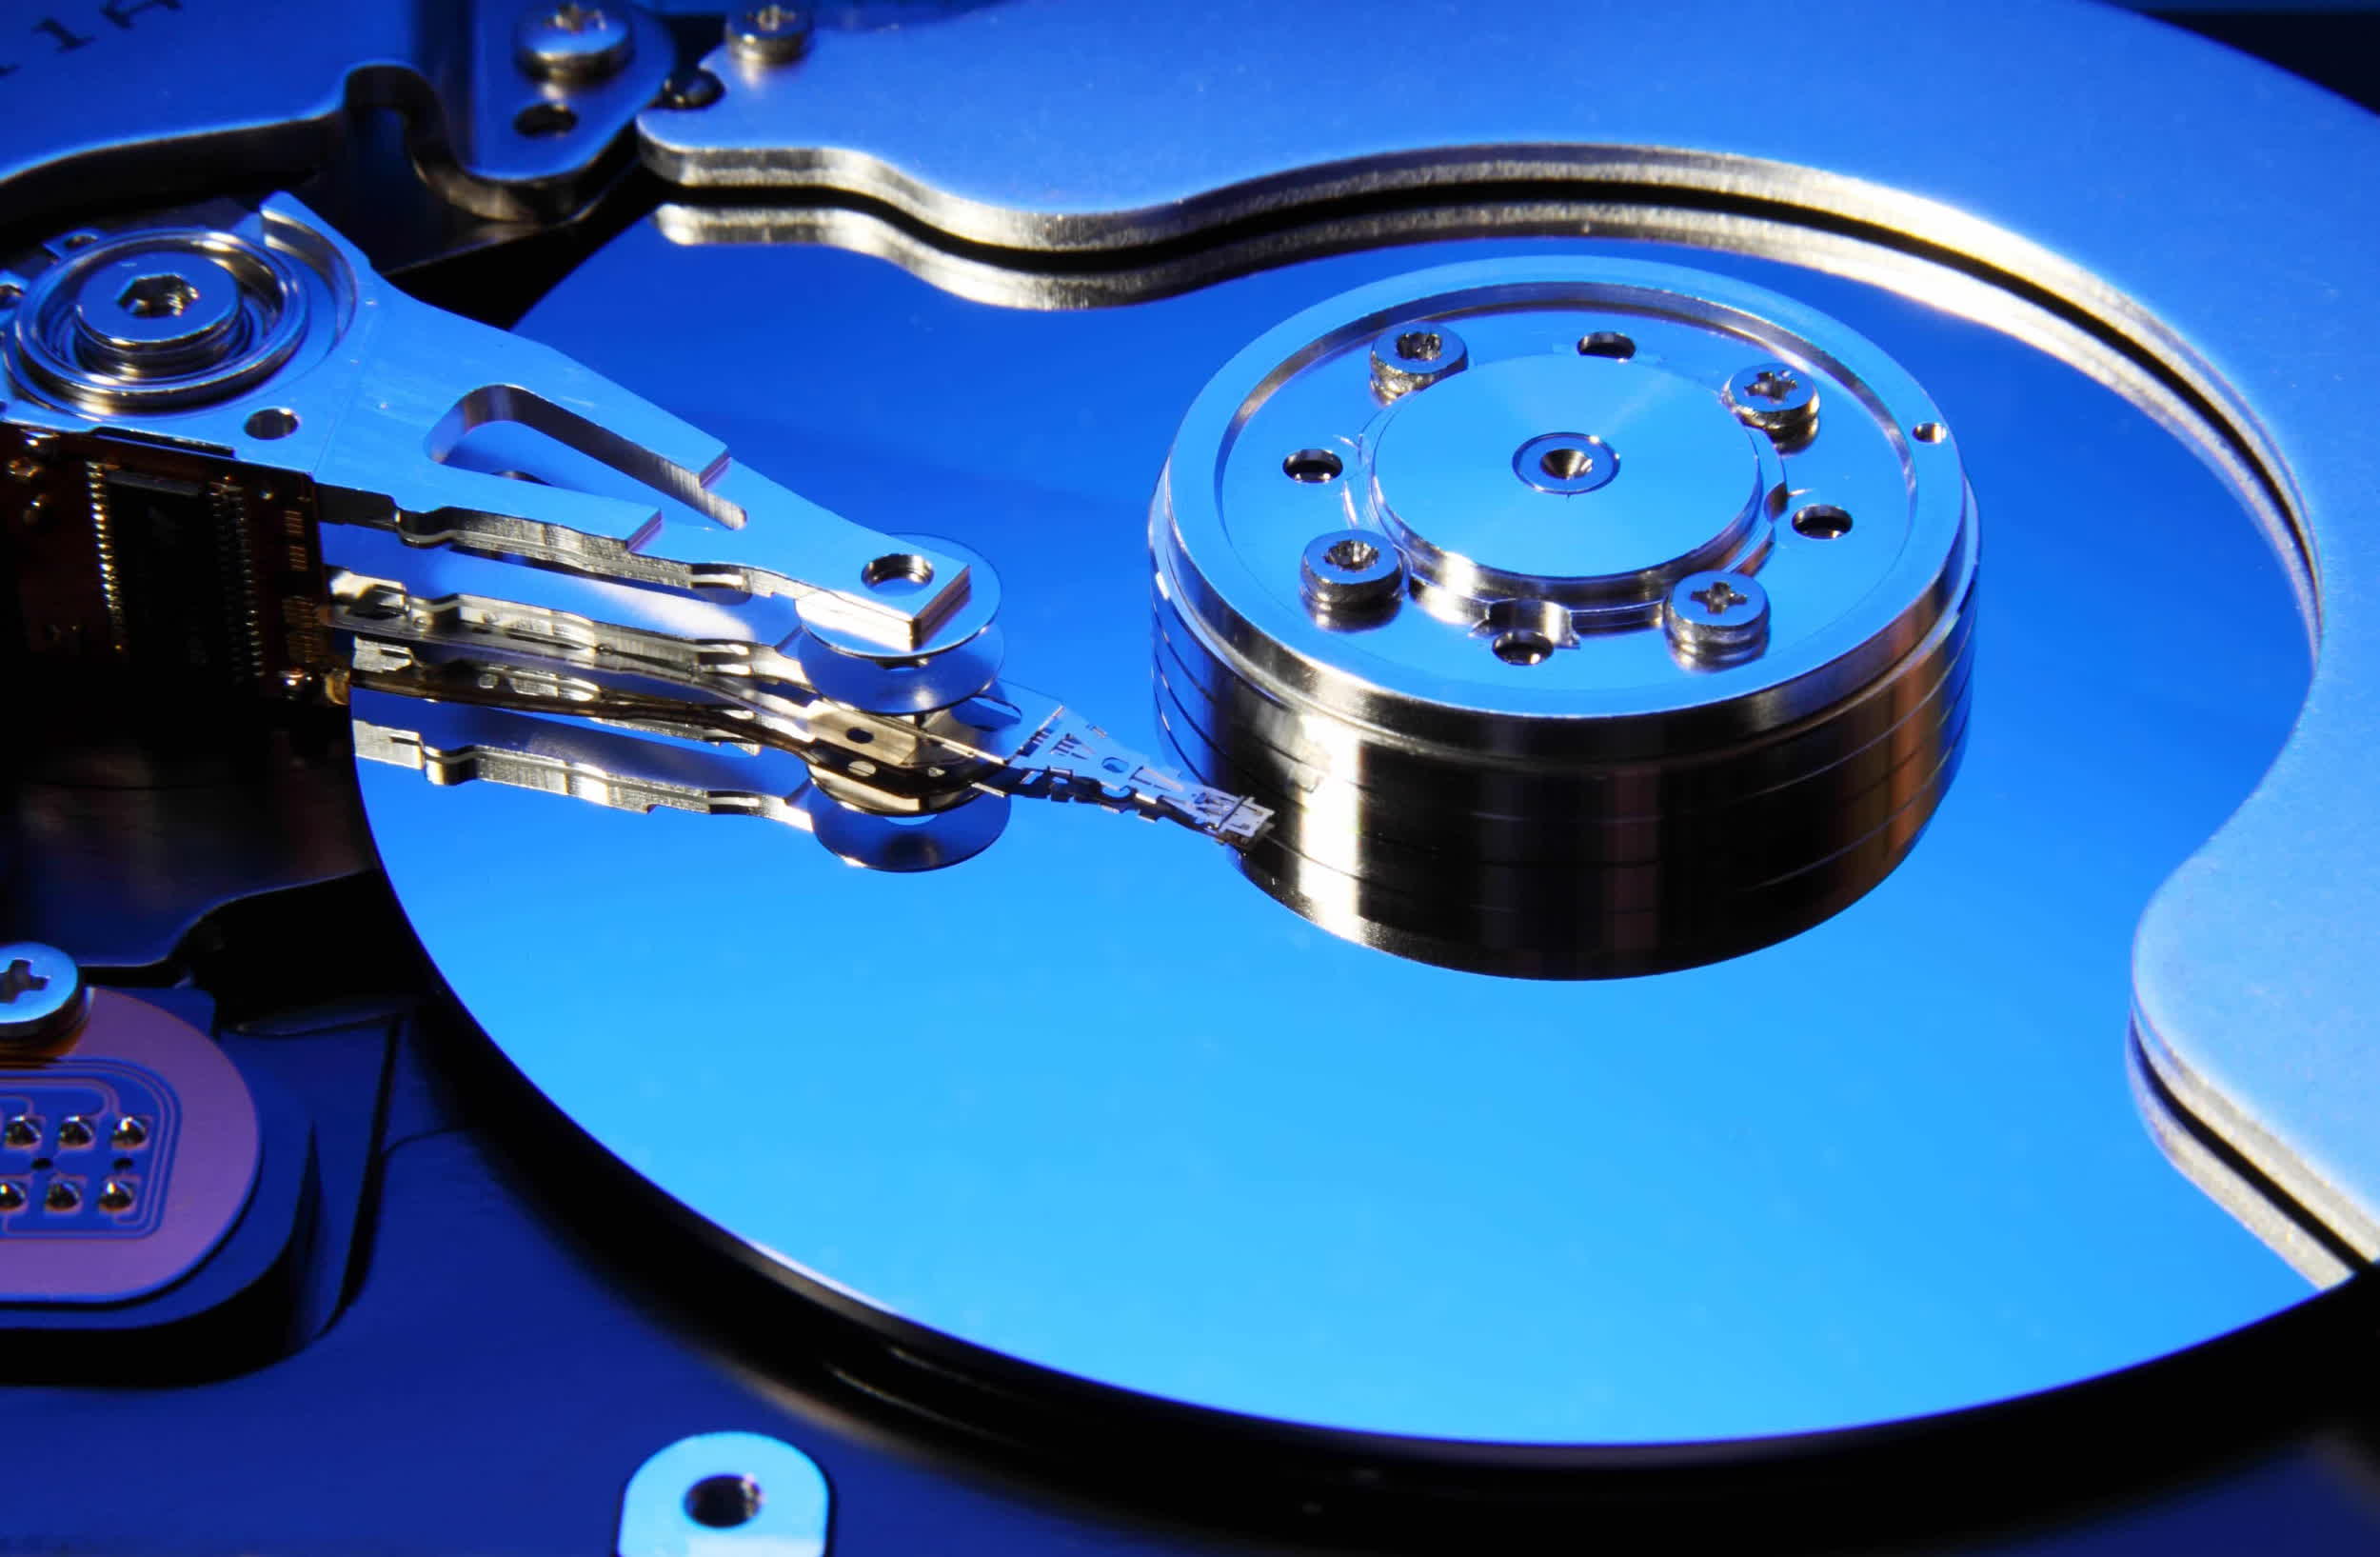 Western Digital begins sampling 28 TB UltraSMR hard drives